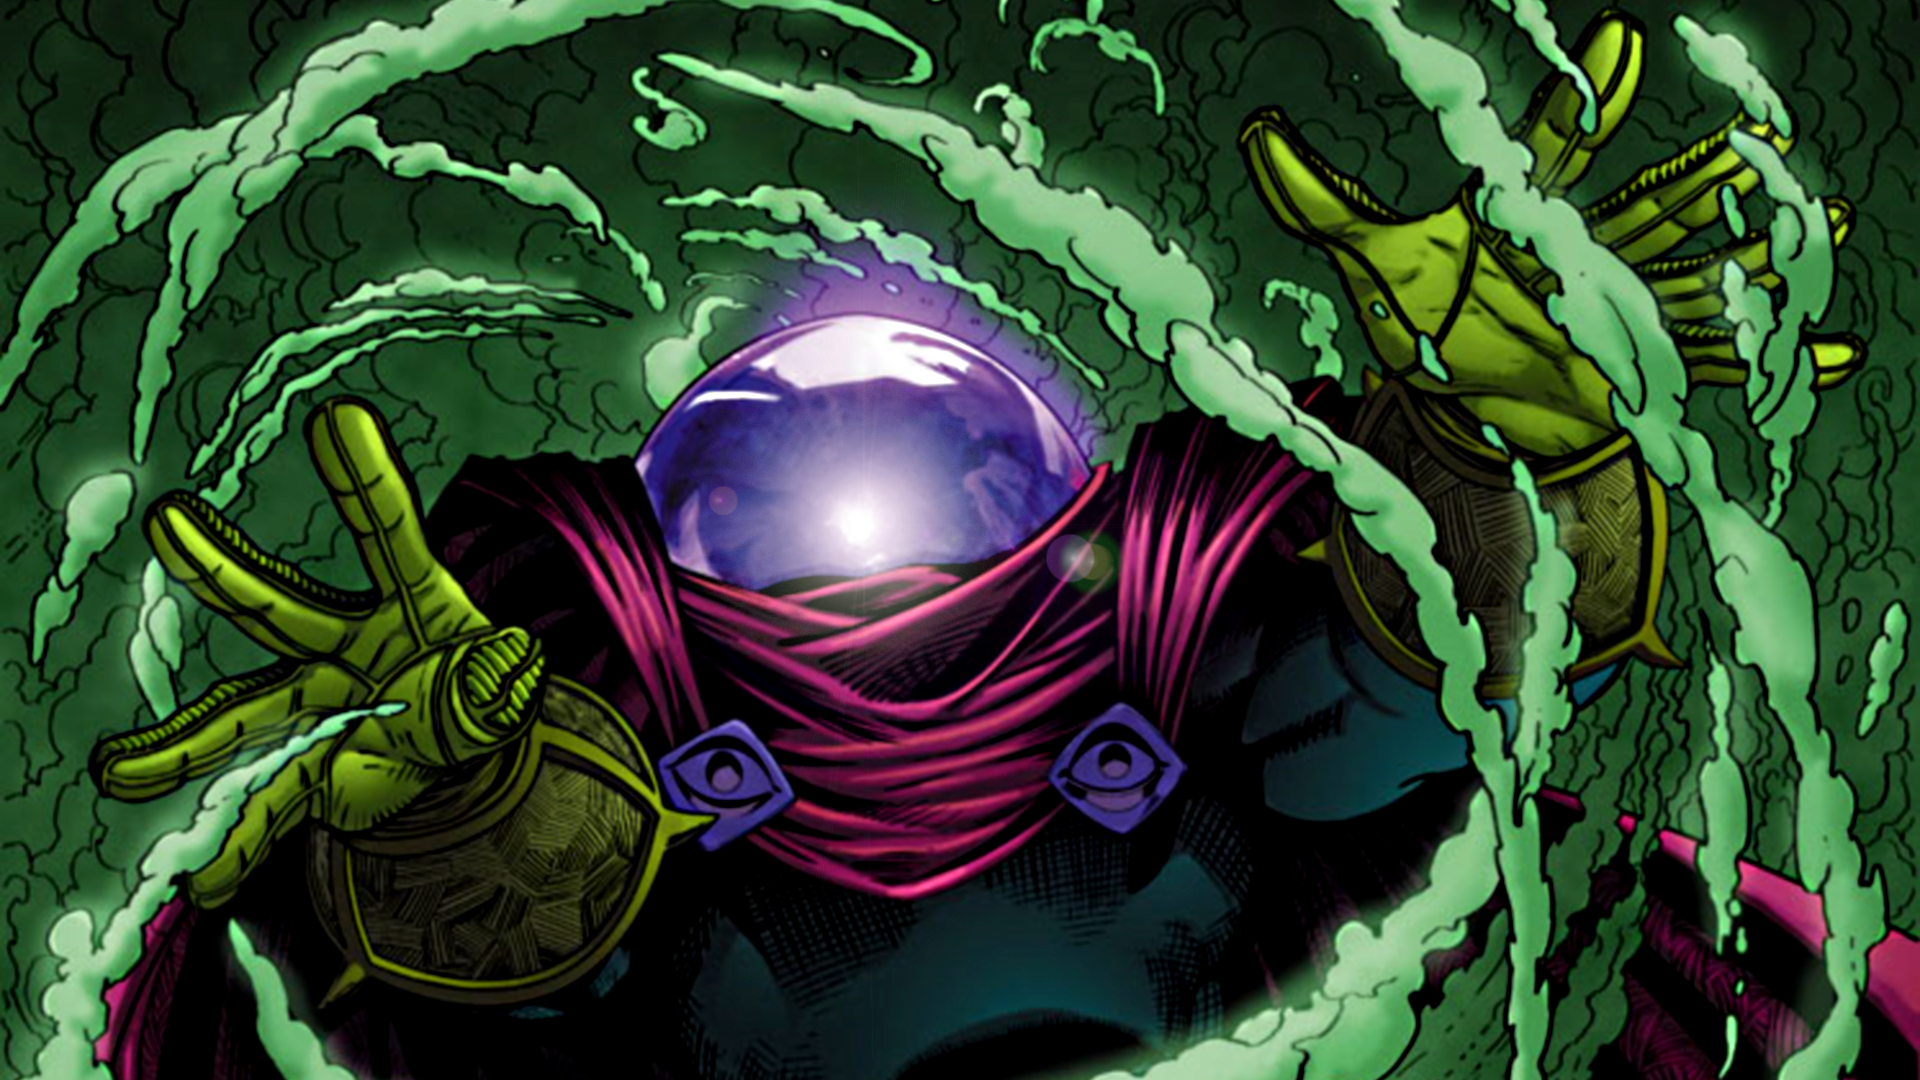 Mysterio #8